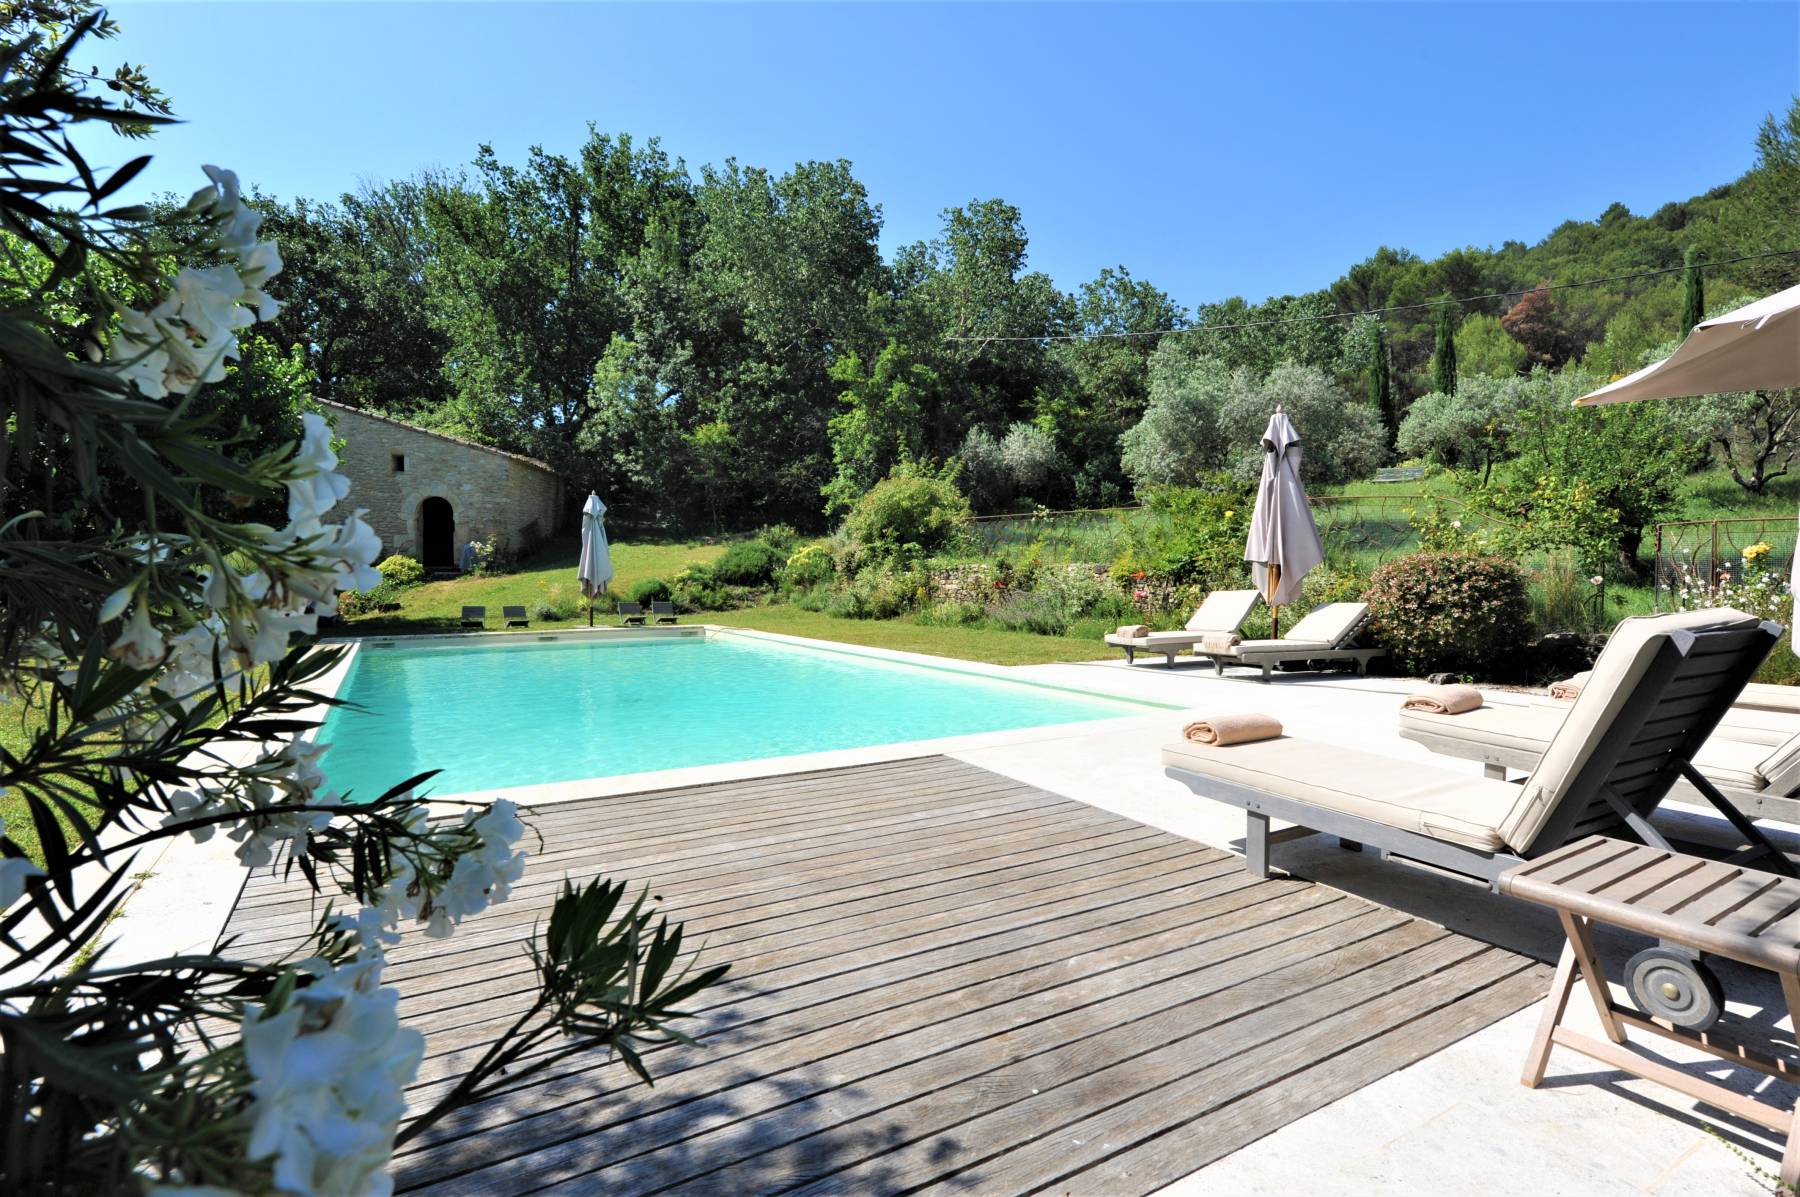 Location Mas traditionnel Provençal avec parc de 11 hectares, piscine et pool house 